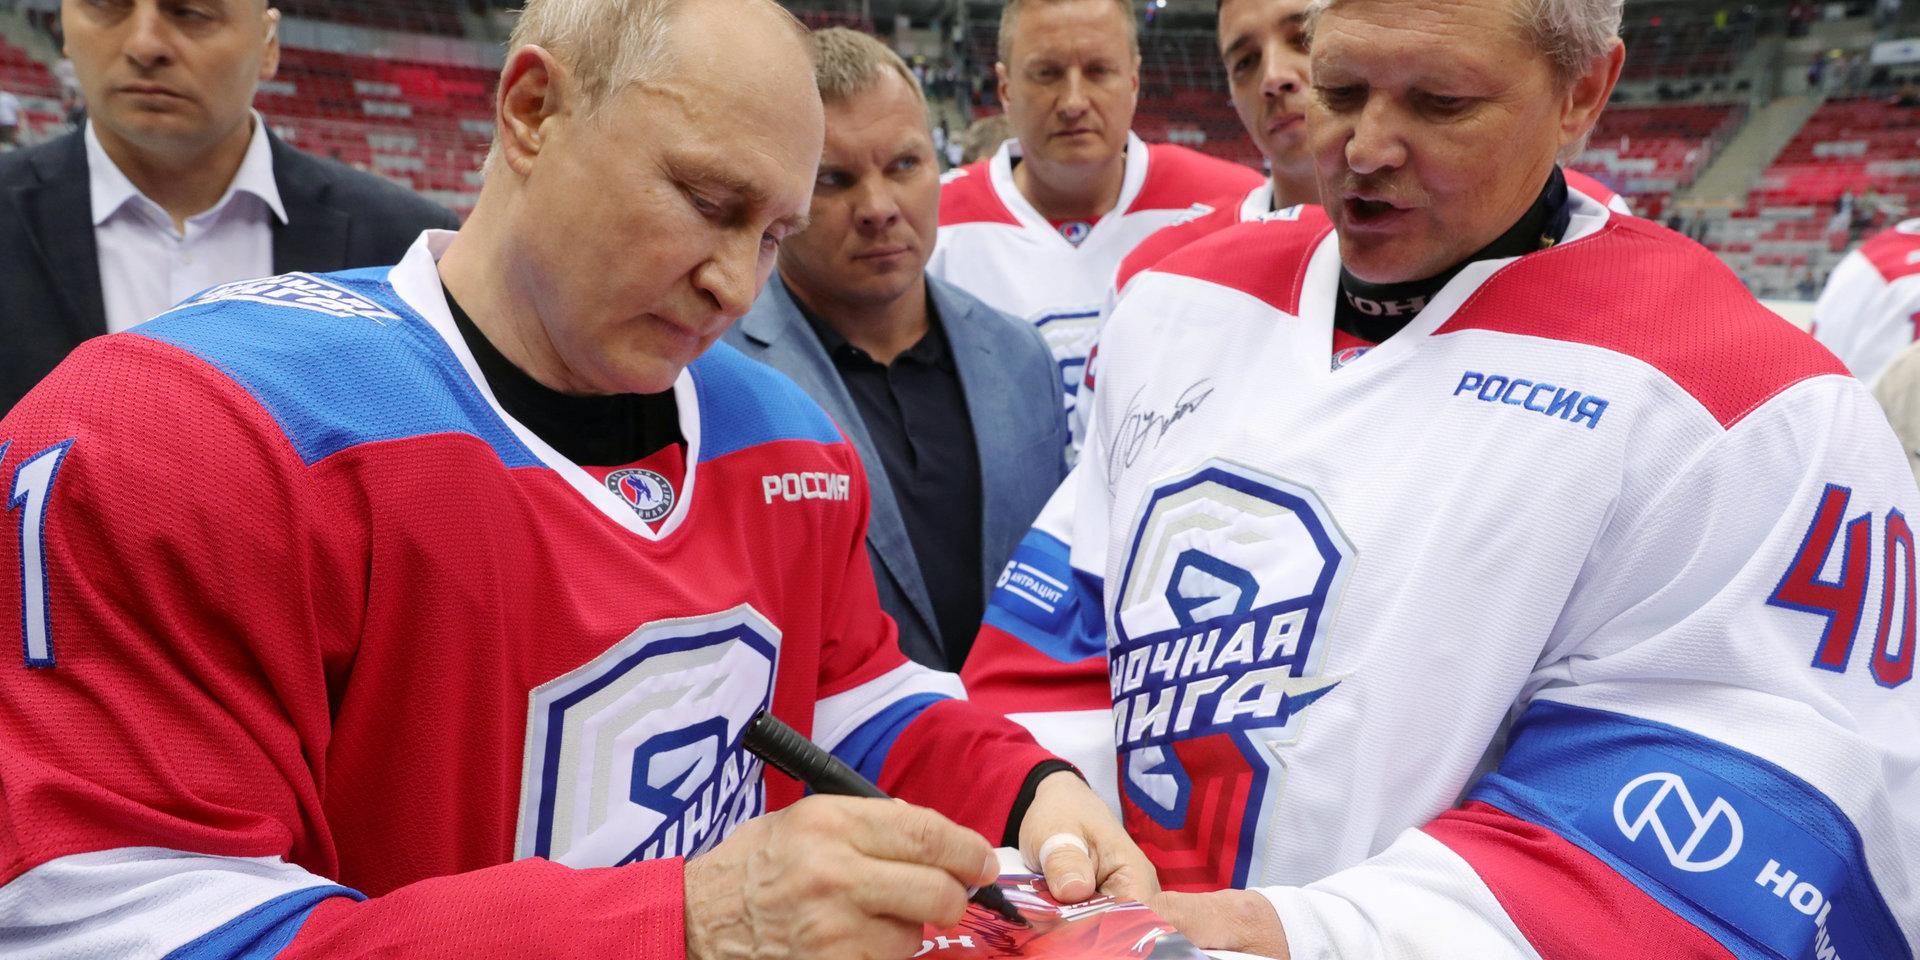 Rysslands president Vladimir Putin, en stor idrottsfantast, ryter ifrån mot Rysslands uteslutning från sportvärlden.